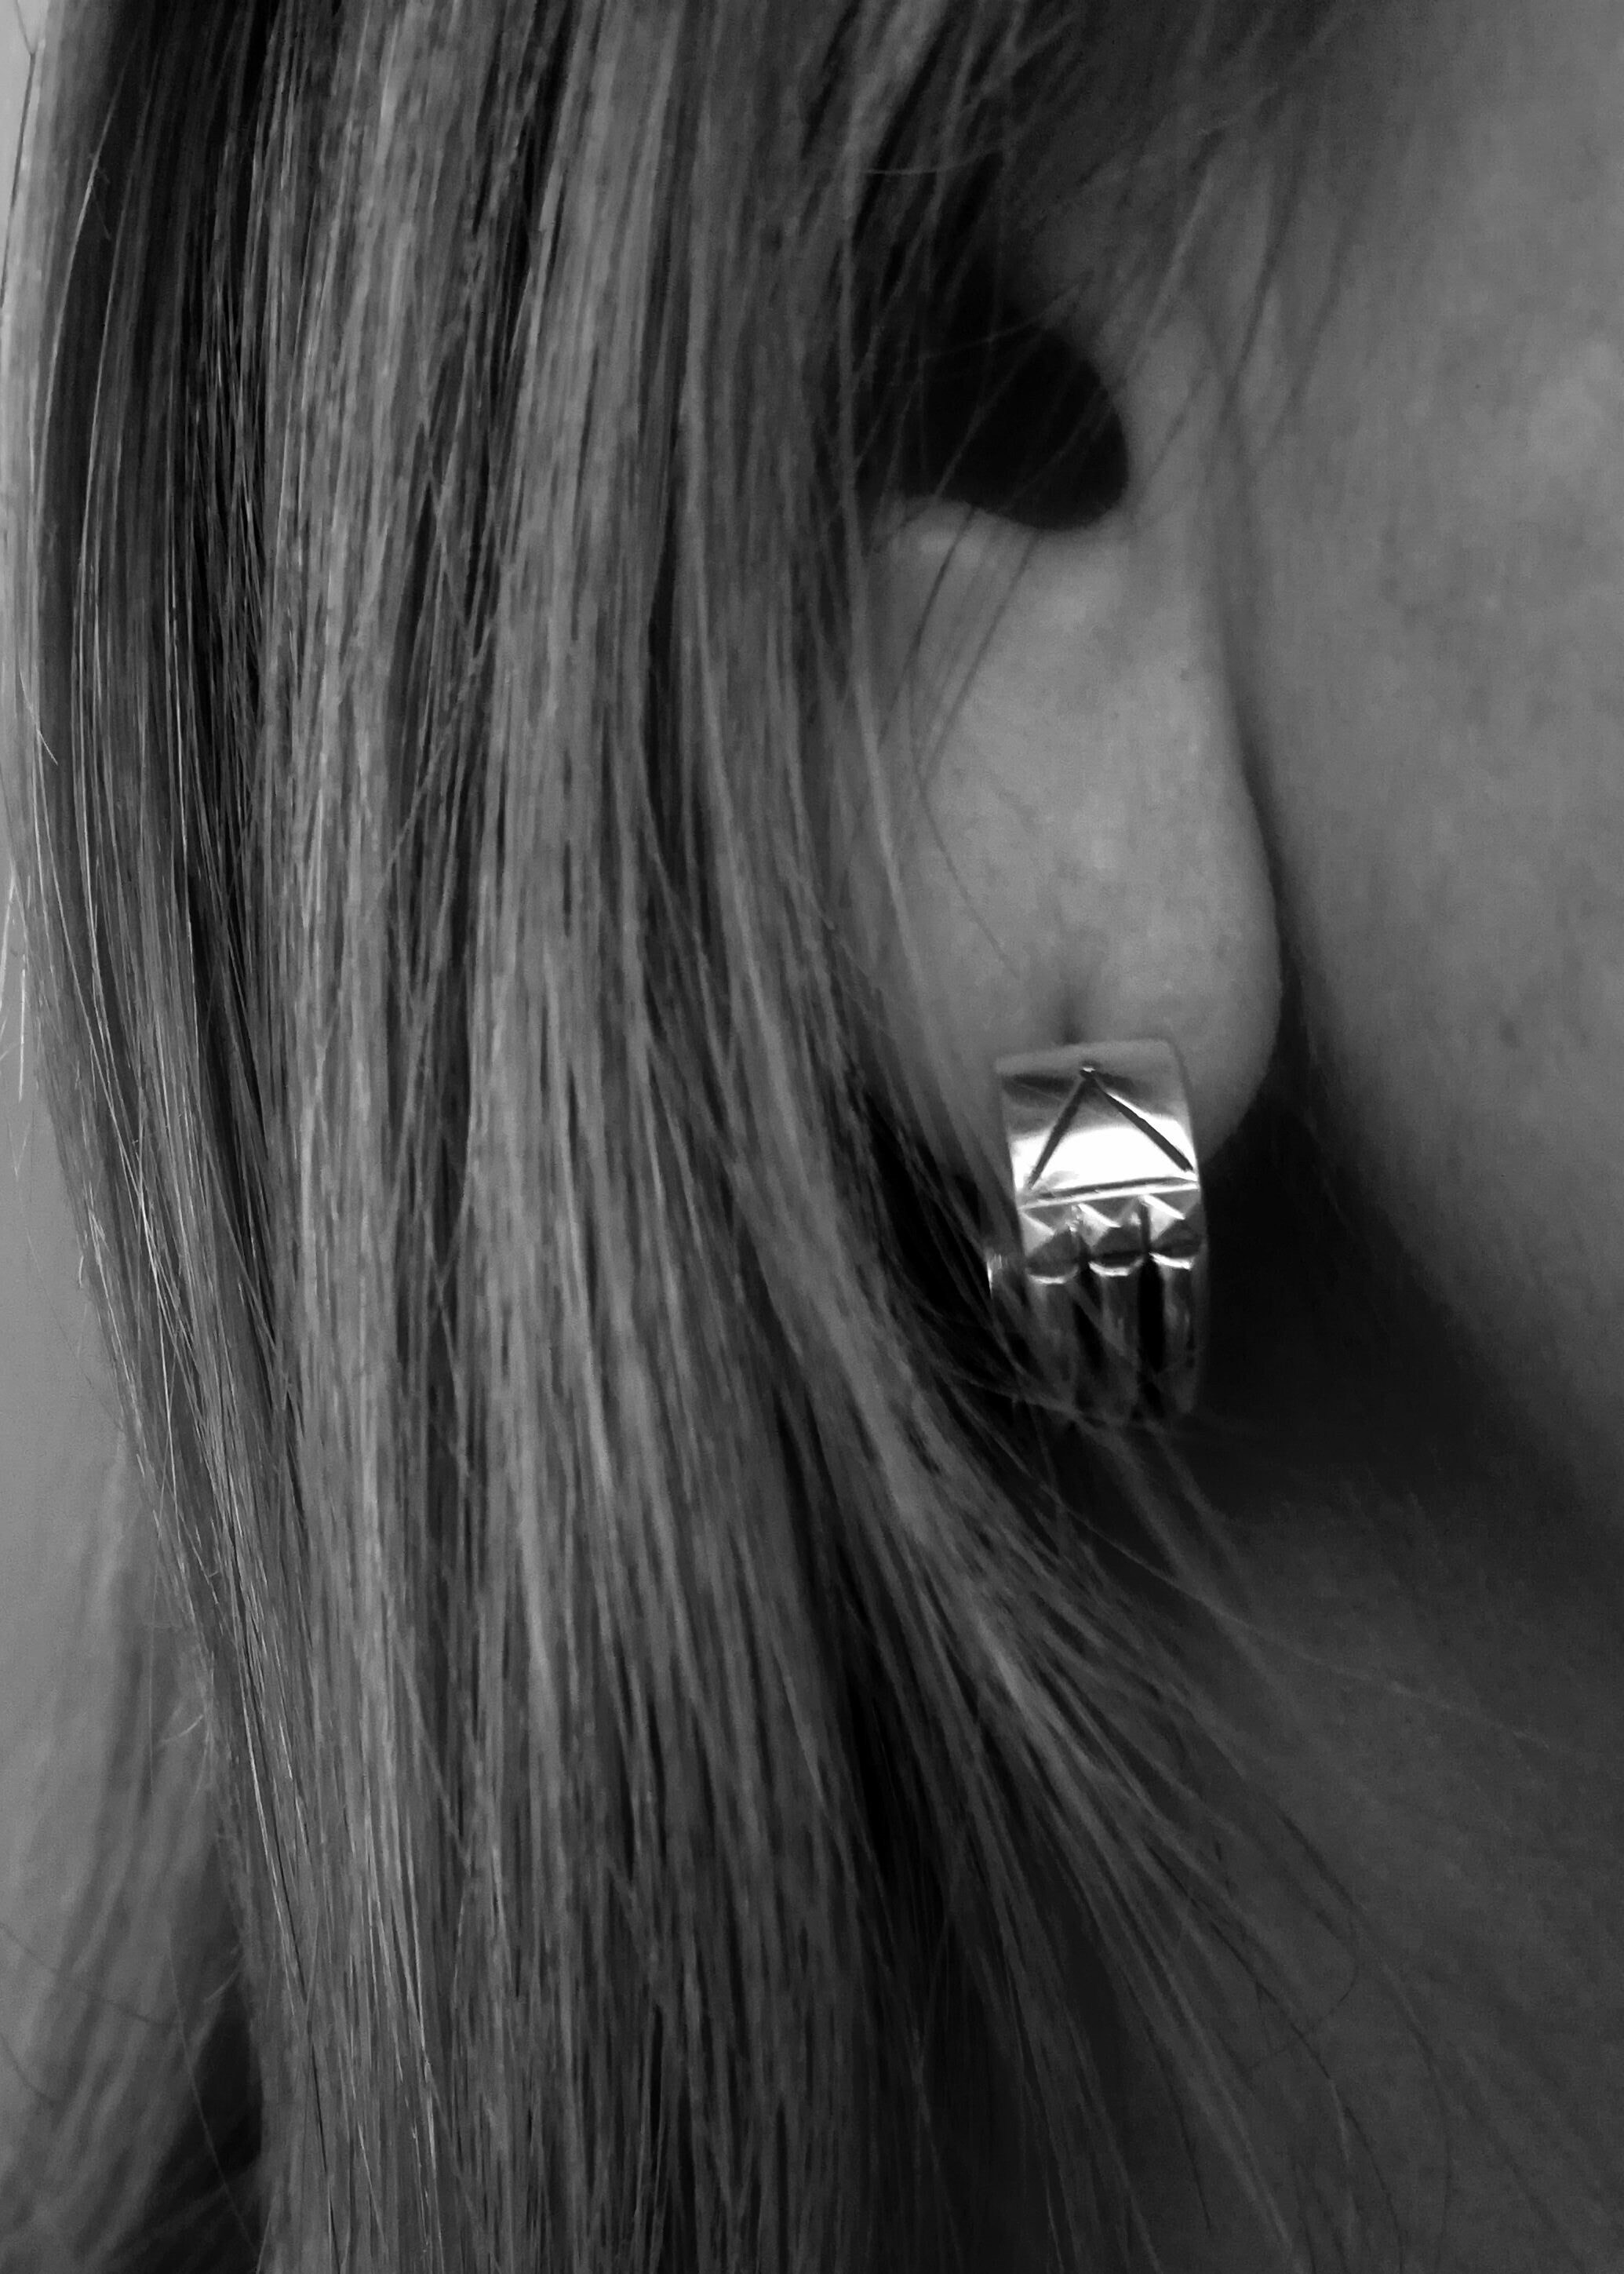 Atlantis Earrings- Sterling Silver Atlantis Ring Earrings (Pair)